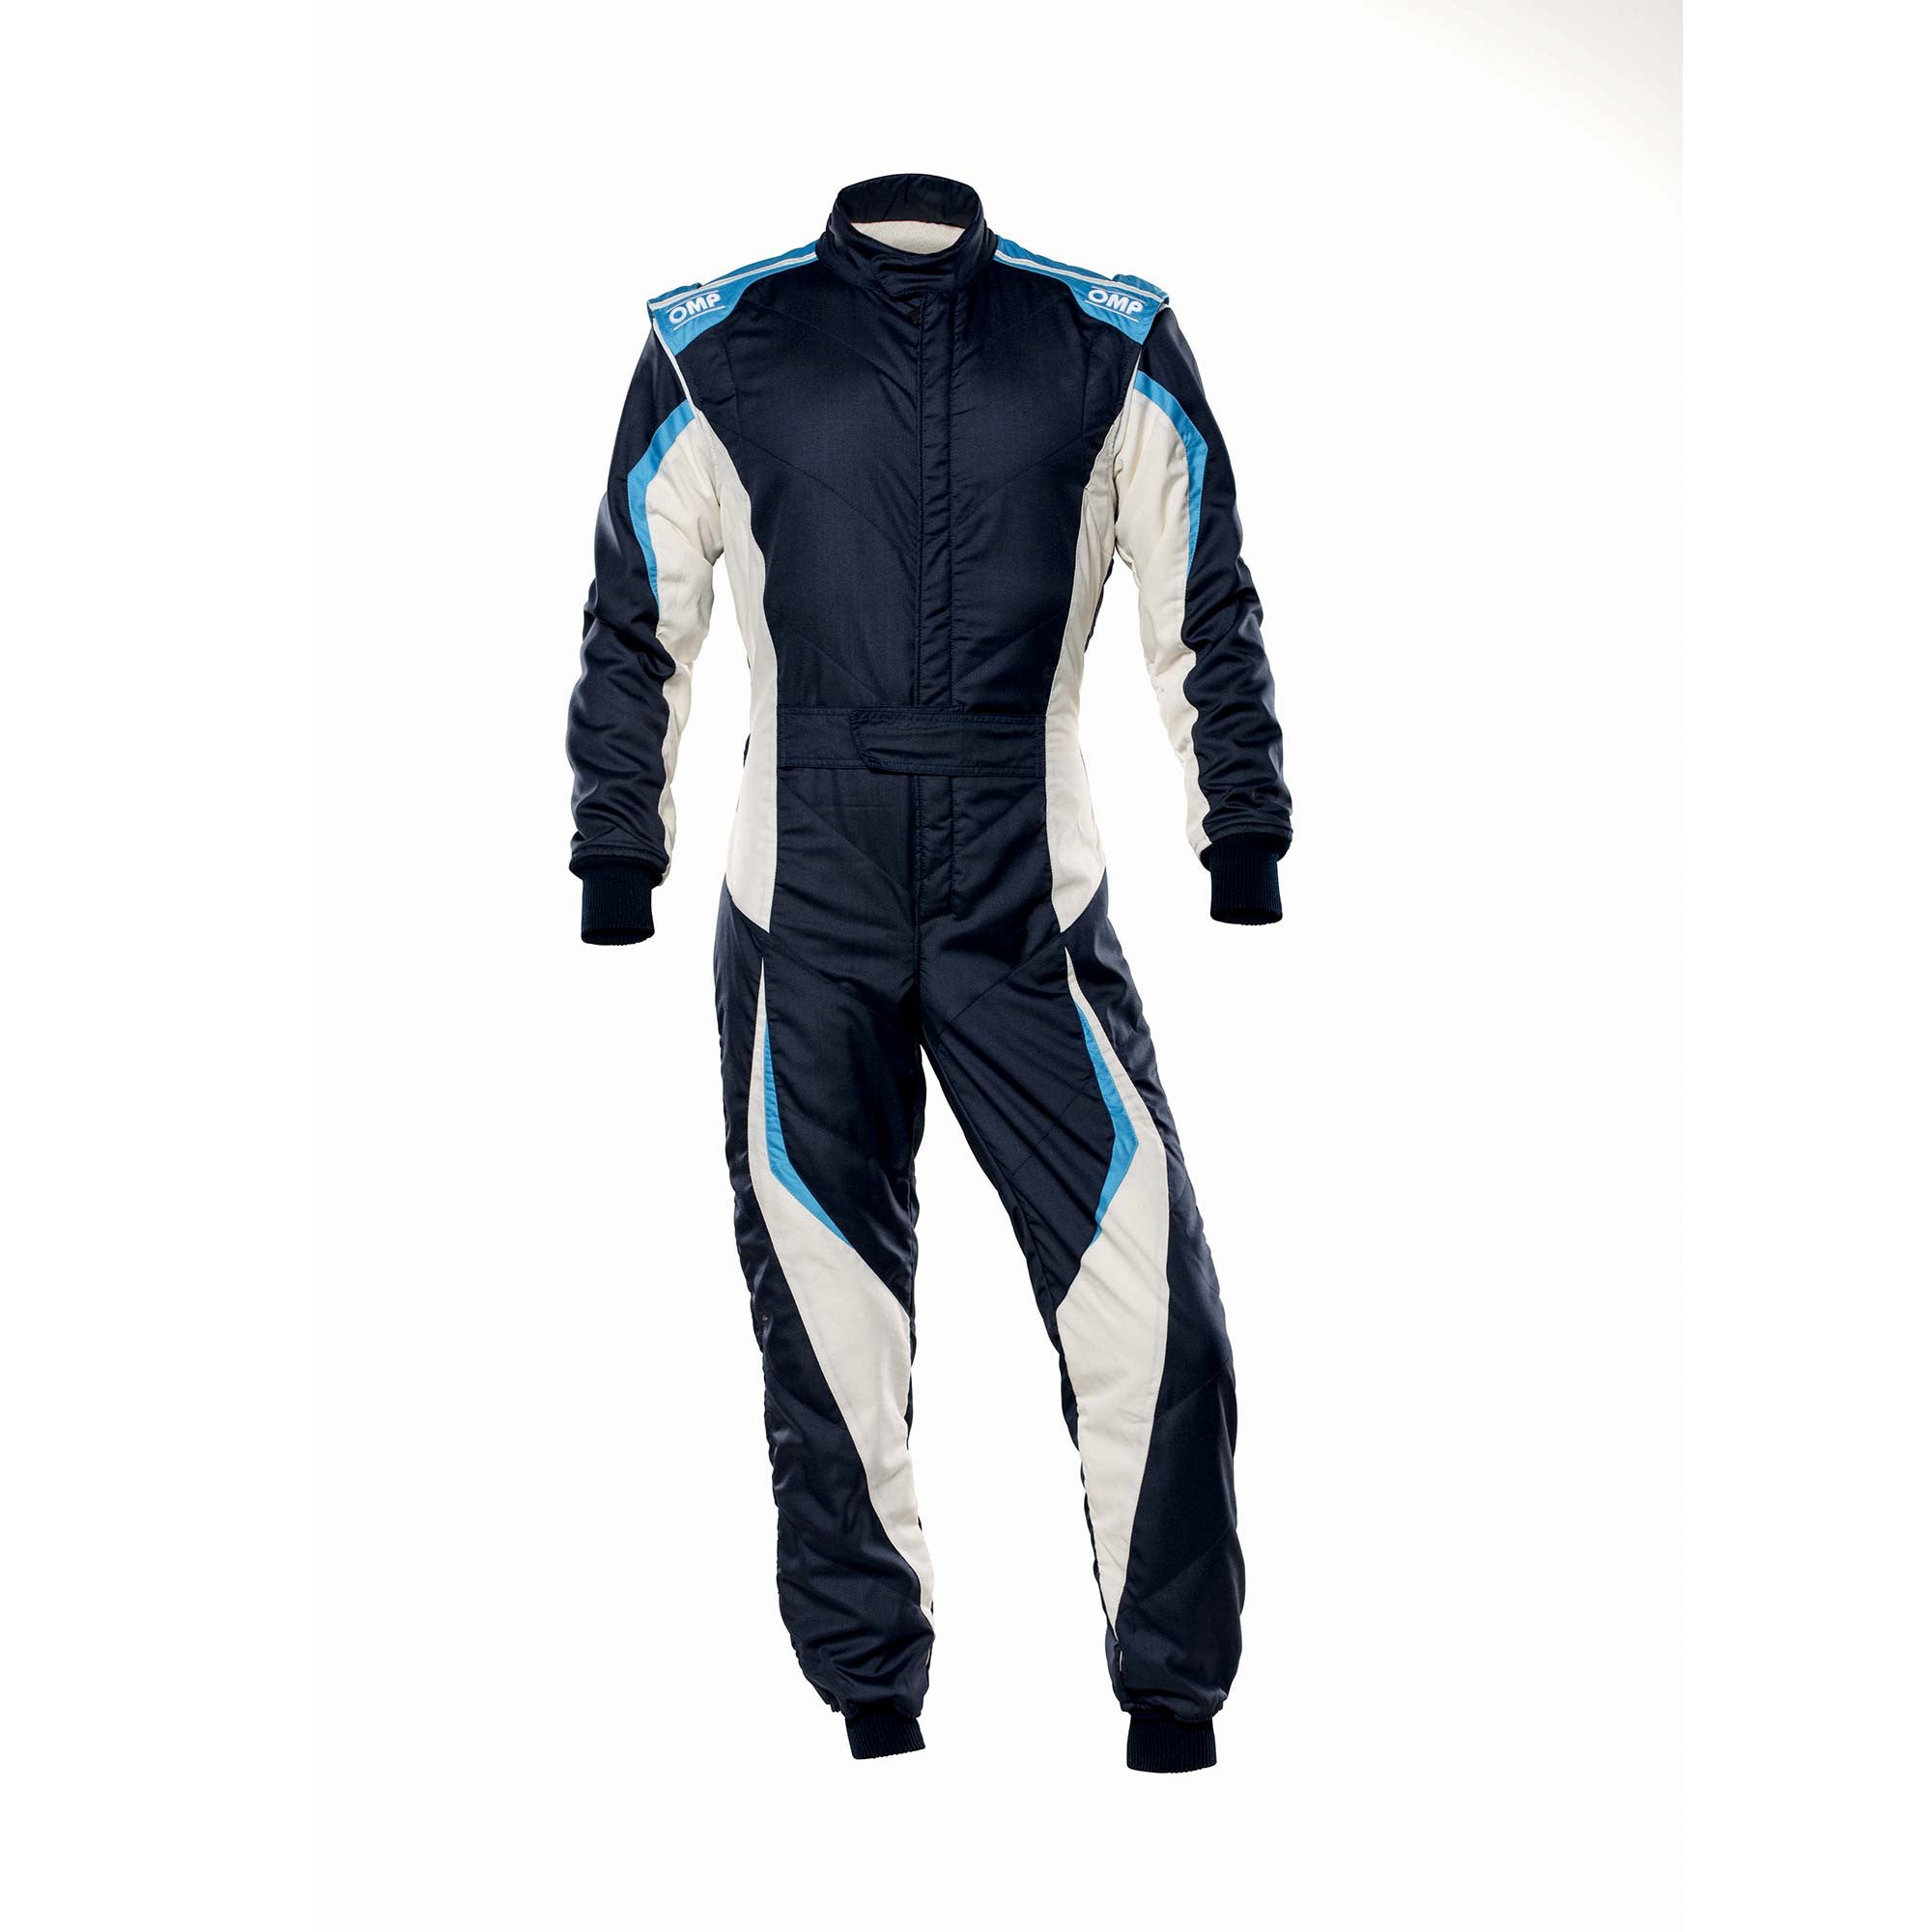 OMP IA0-1859-B01-246-48 Racing suit TECNICA EVO MY2021, FIA 8856-2018, navy blue/white/grey/cyan, size 48 Photo-0 